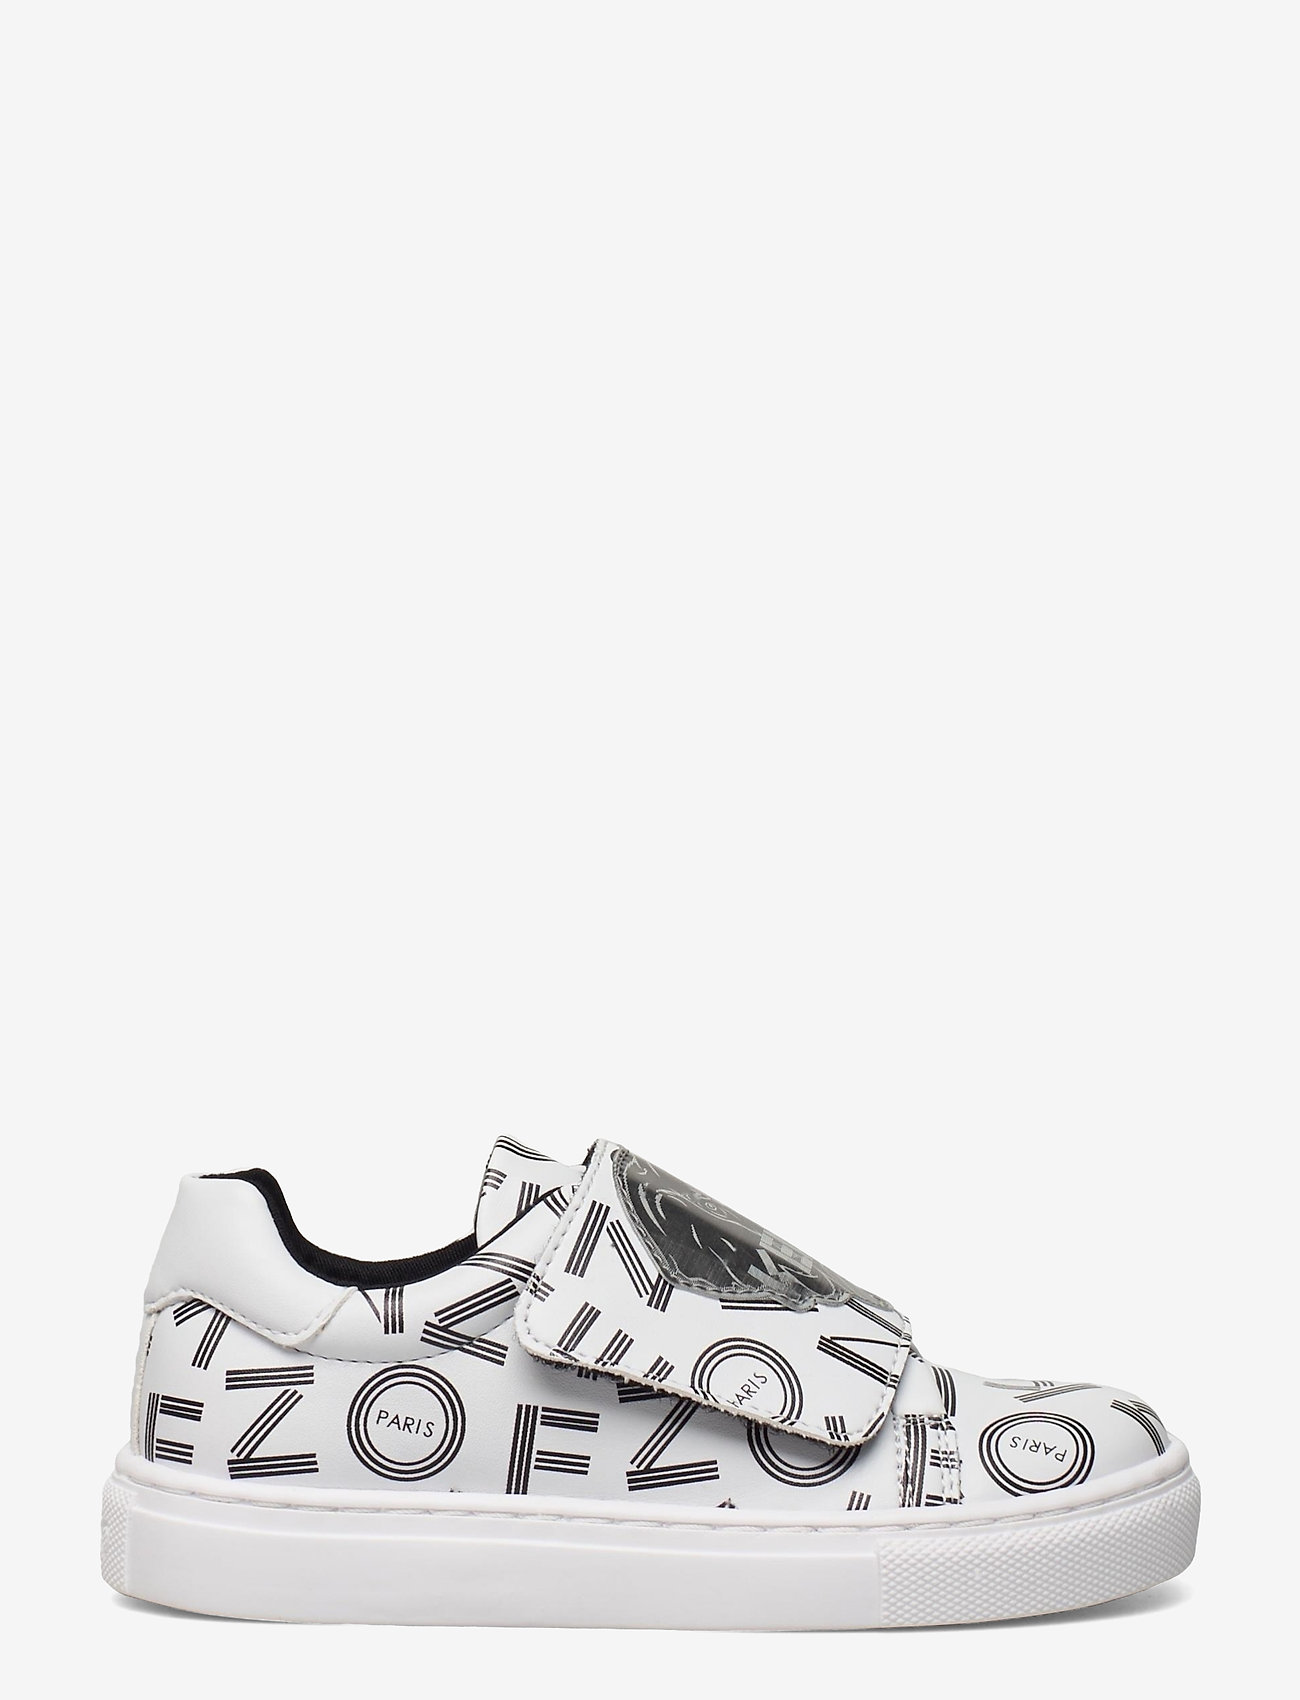 Kenzo Shoes - Boozt.com